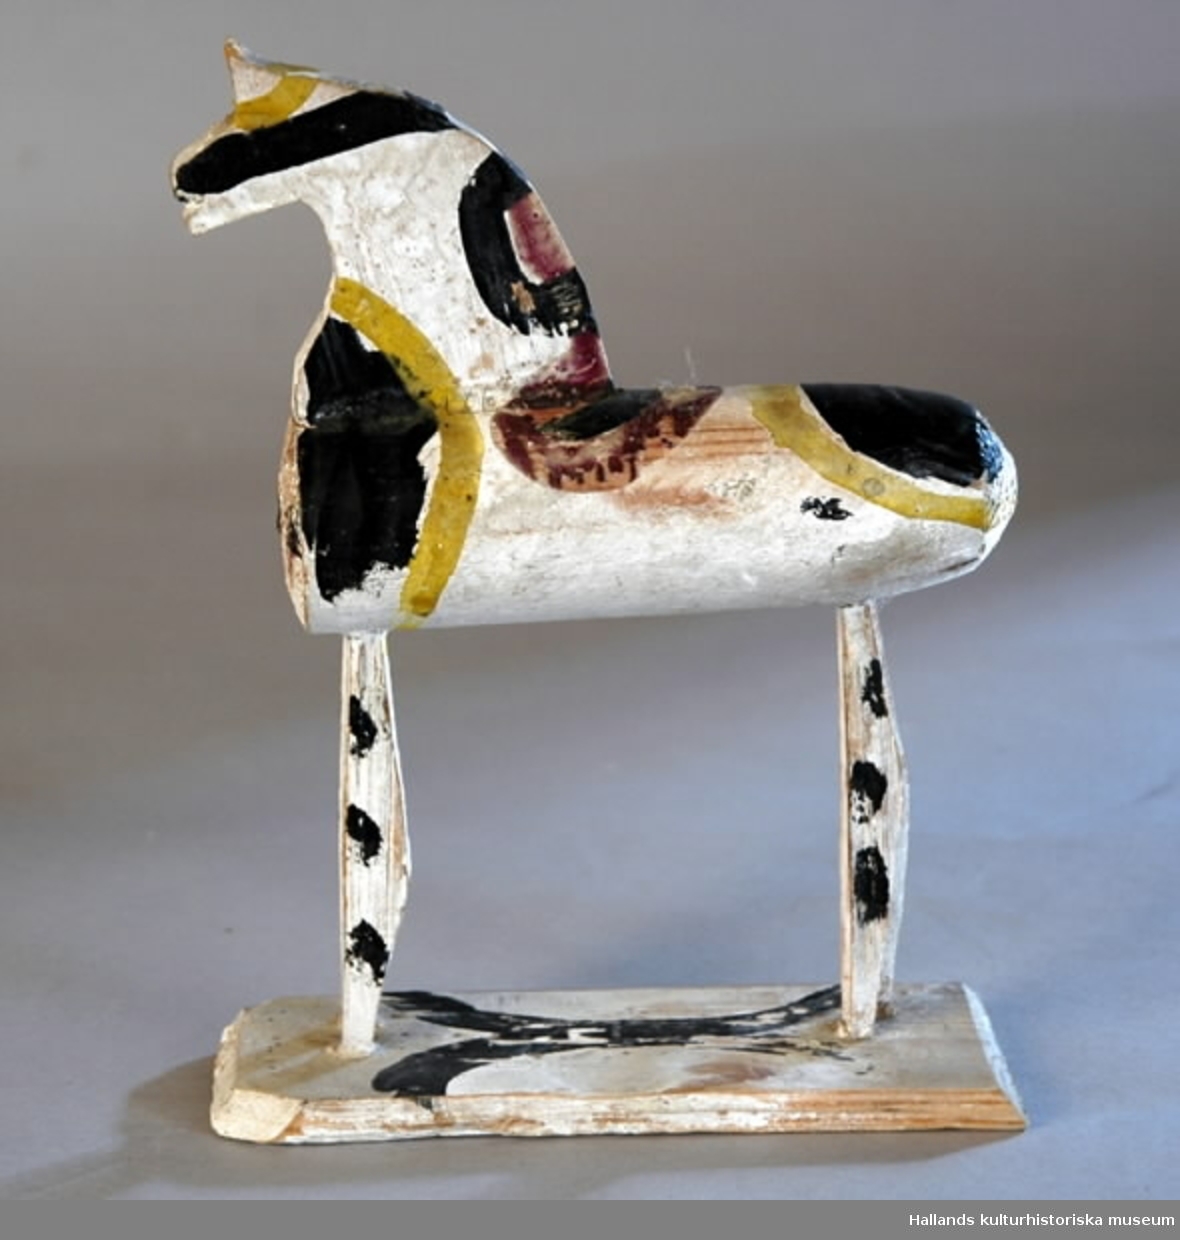 Leksakshäst av trä, vitmålad med mönster i gult, svart och gredelint. Kroppen cylindrisk, svansen har fallit bort. Huvudet och benen är profiler utskurna ur en träskiva. Hästen står på en rektangulär platta.